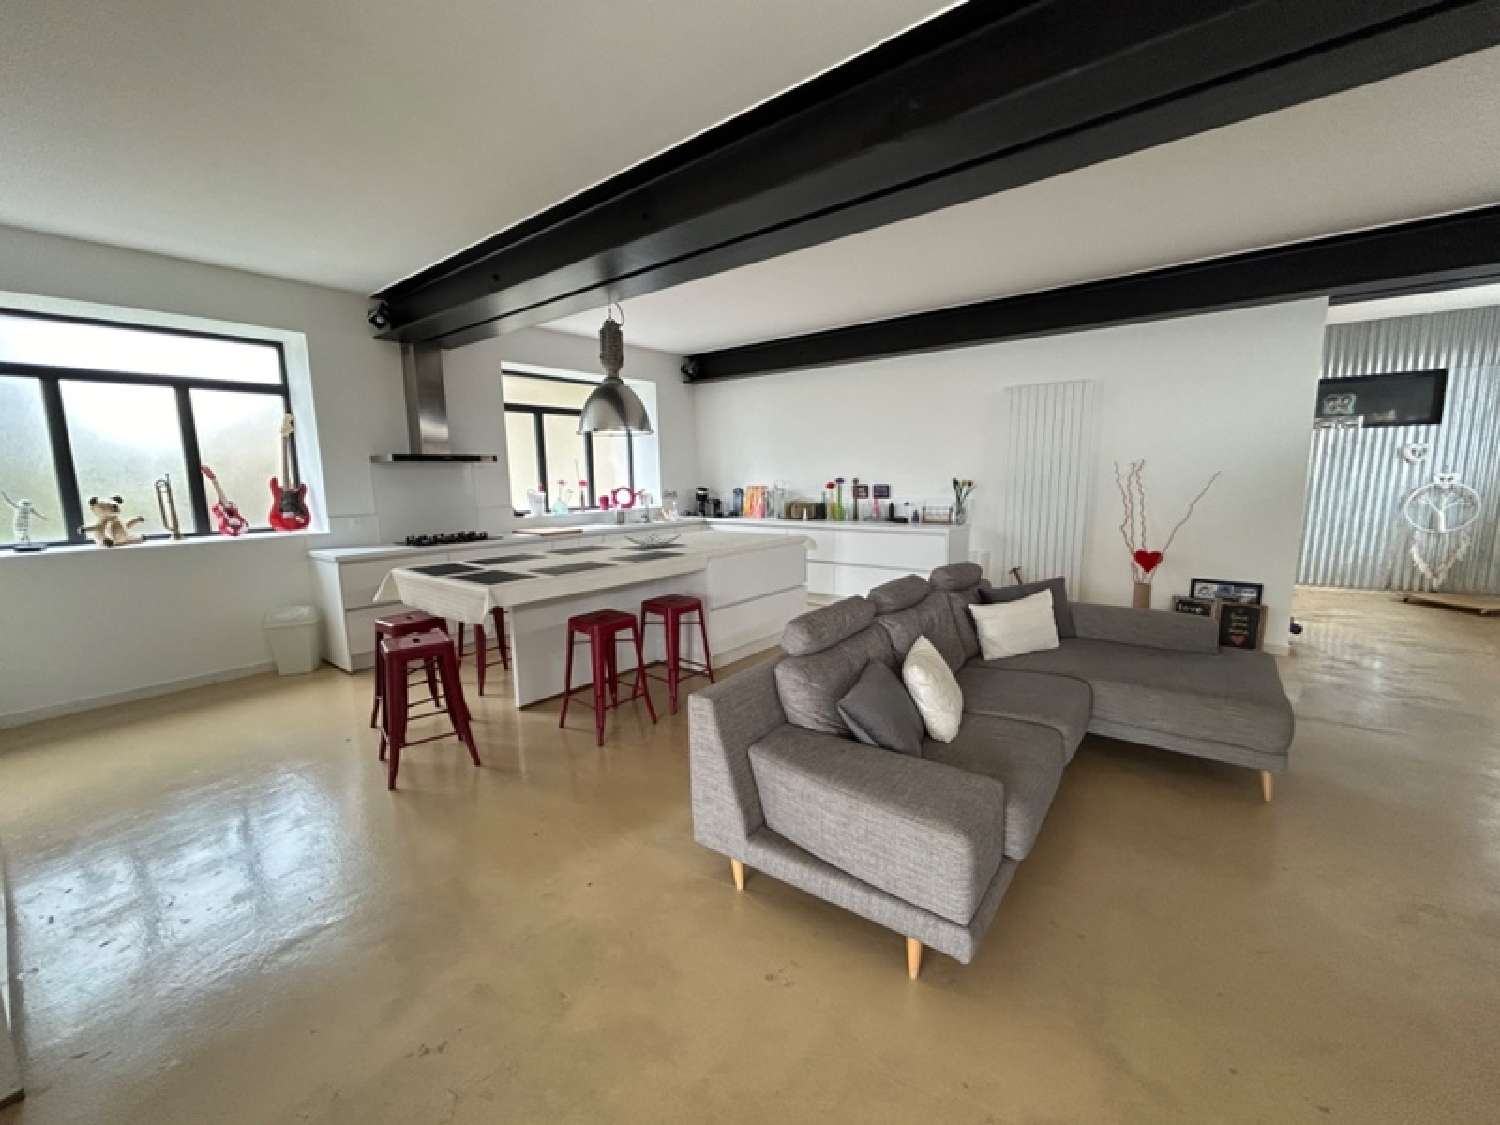 Albens Savoie Wohnung/ Apartment Bild 6850934